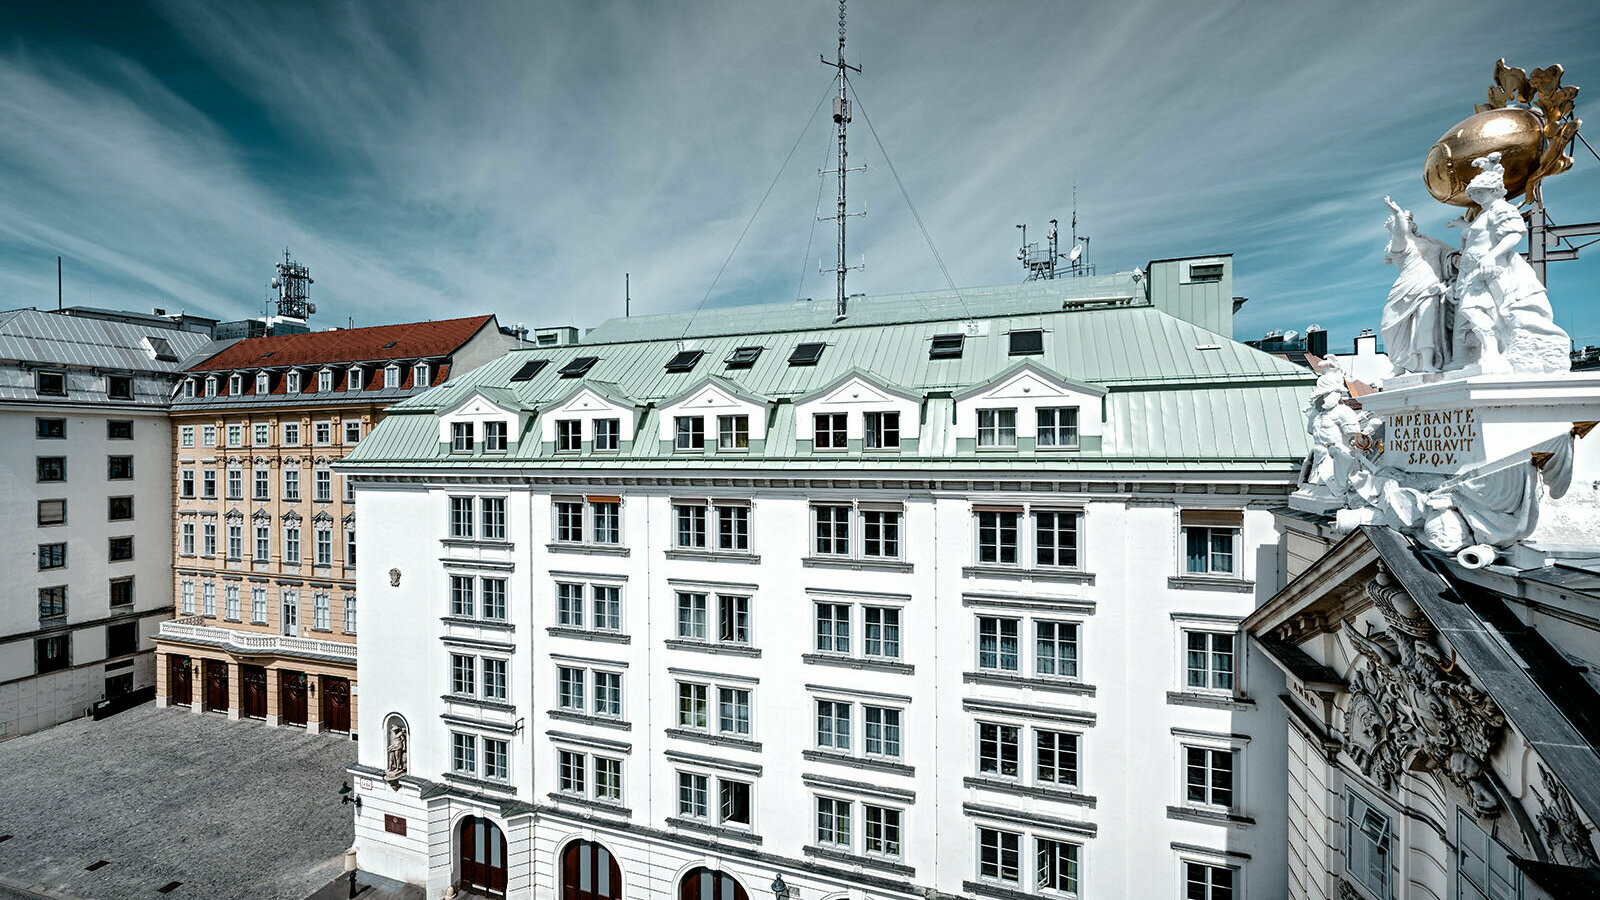 Blick auf die Hauptfeuerwache am Hof in Wien. Das Dach ist mit Prefalz in P.10 patinagrün eingedeckt.